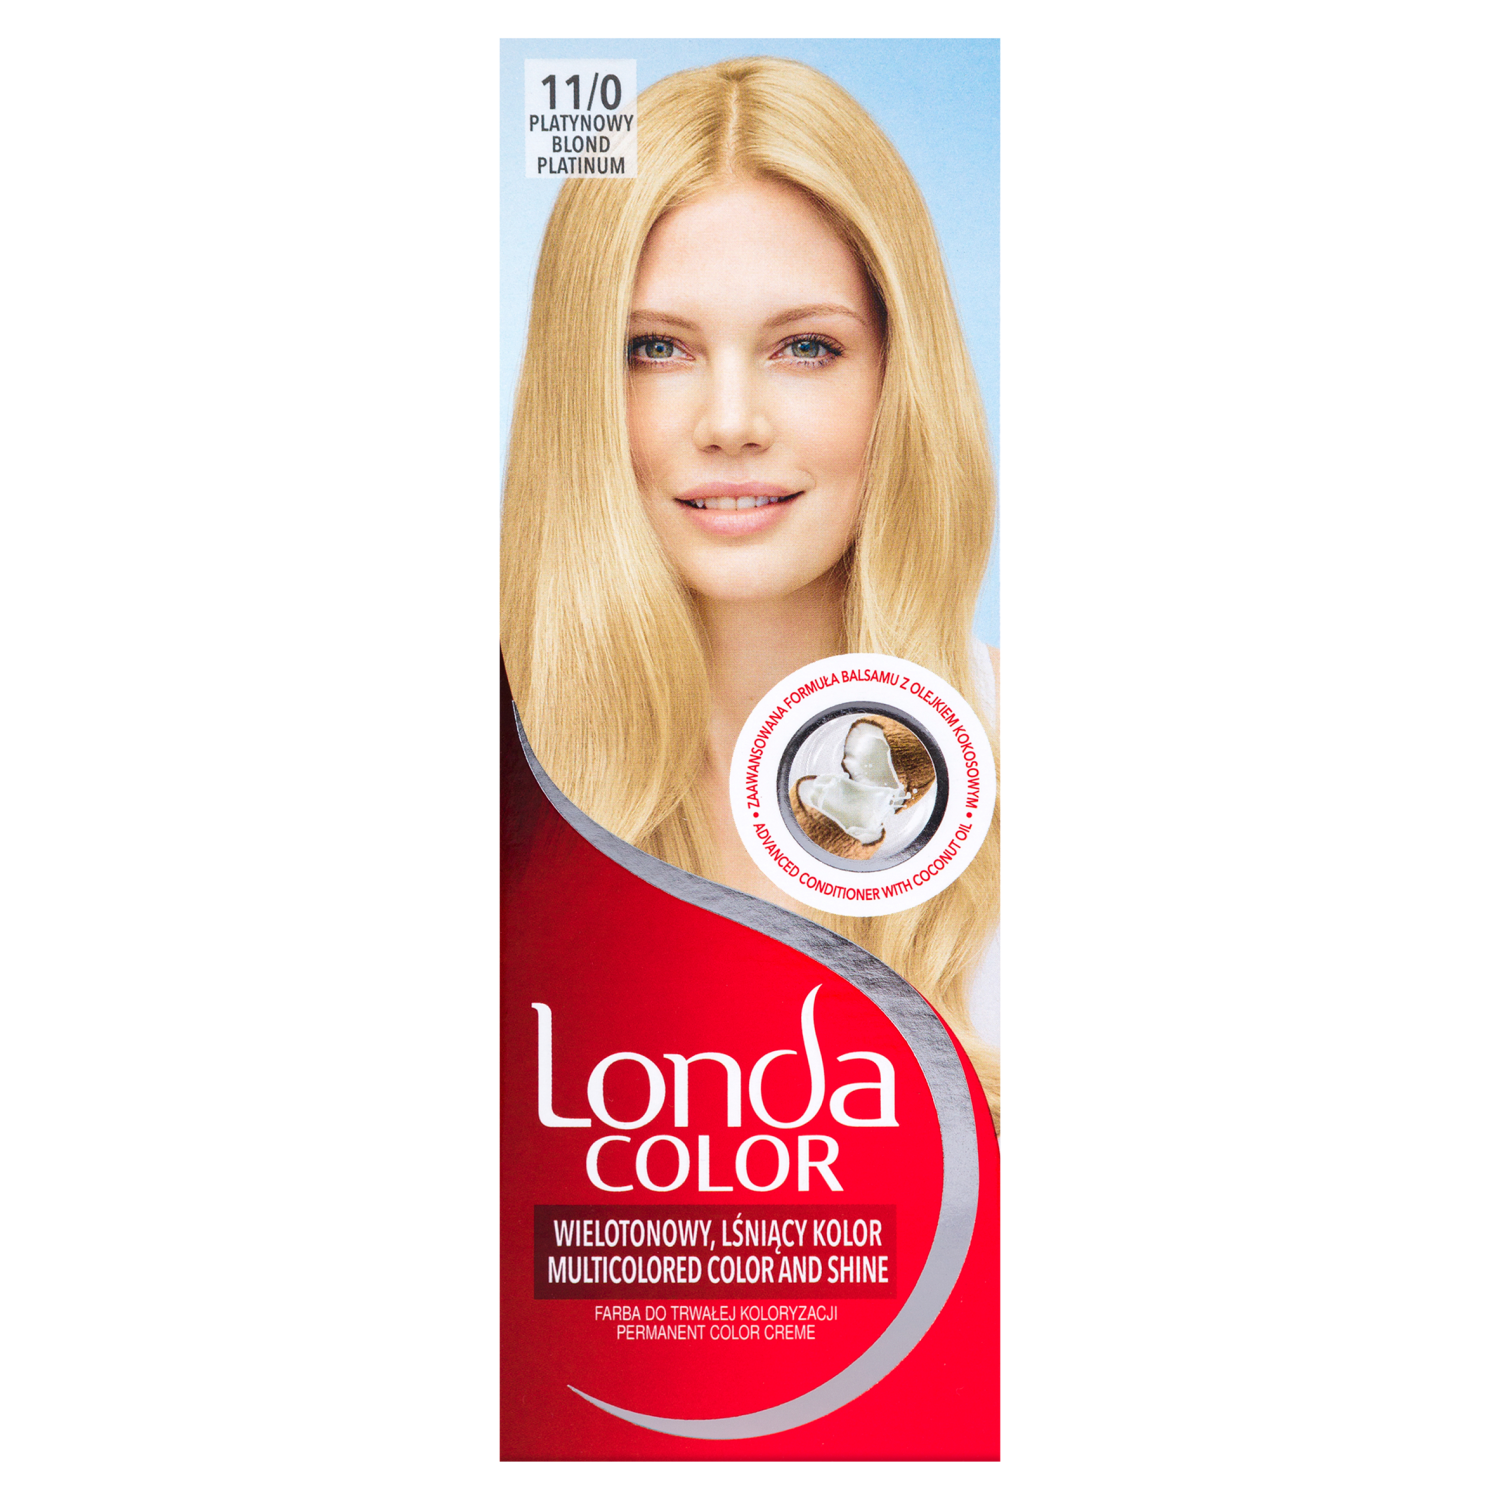 Крем-краска для волос 11/0 платиновый блондин Londa Color, 1 упаковка